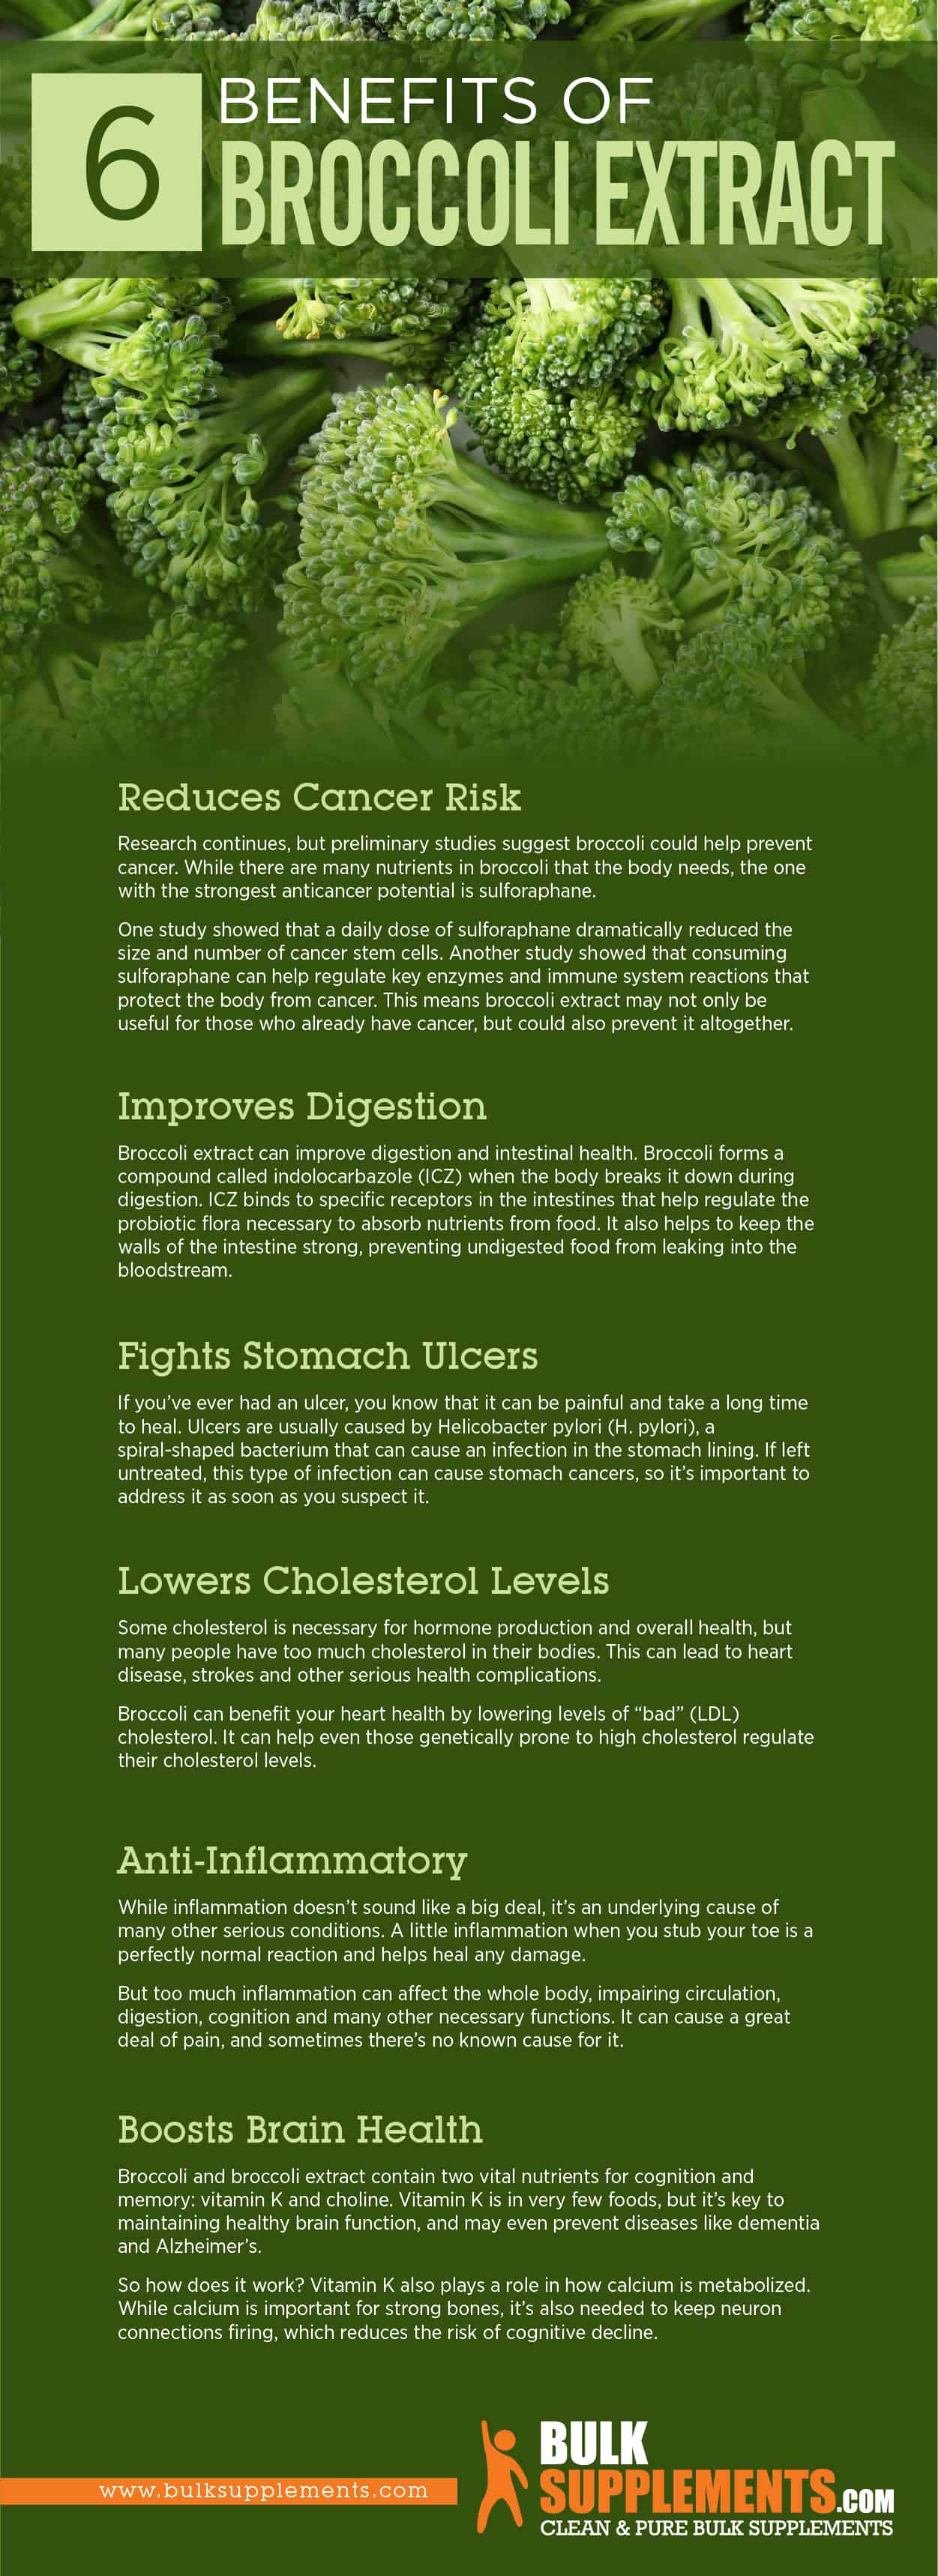 Broccoli Extract Benefits